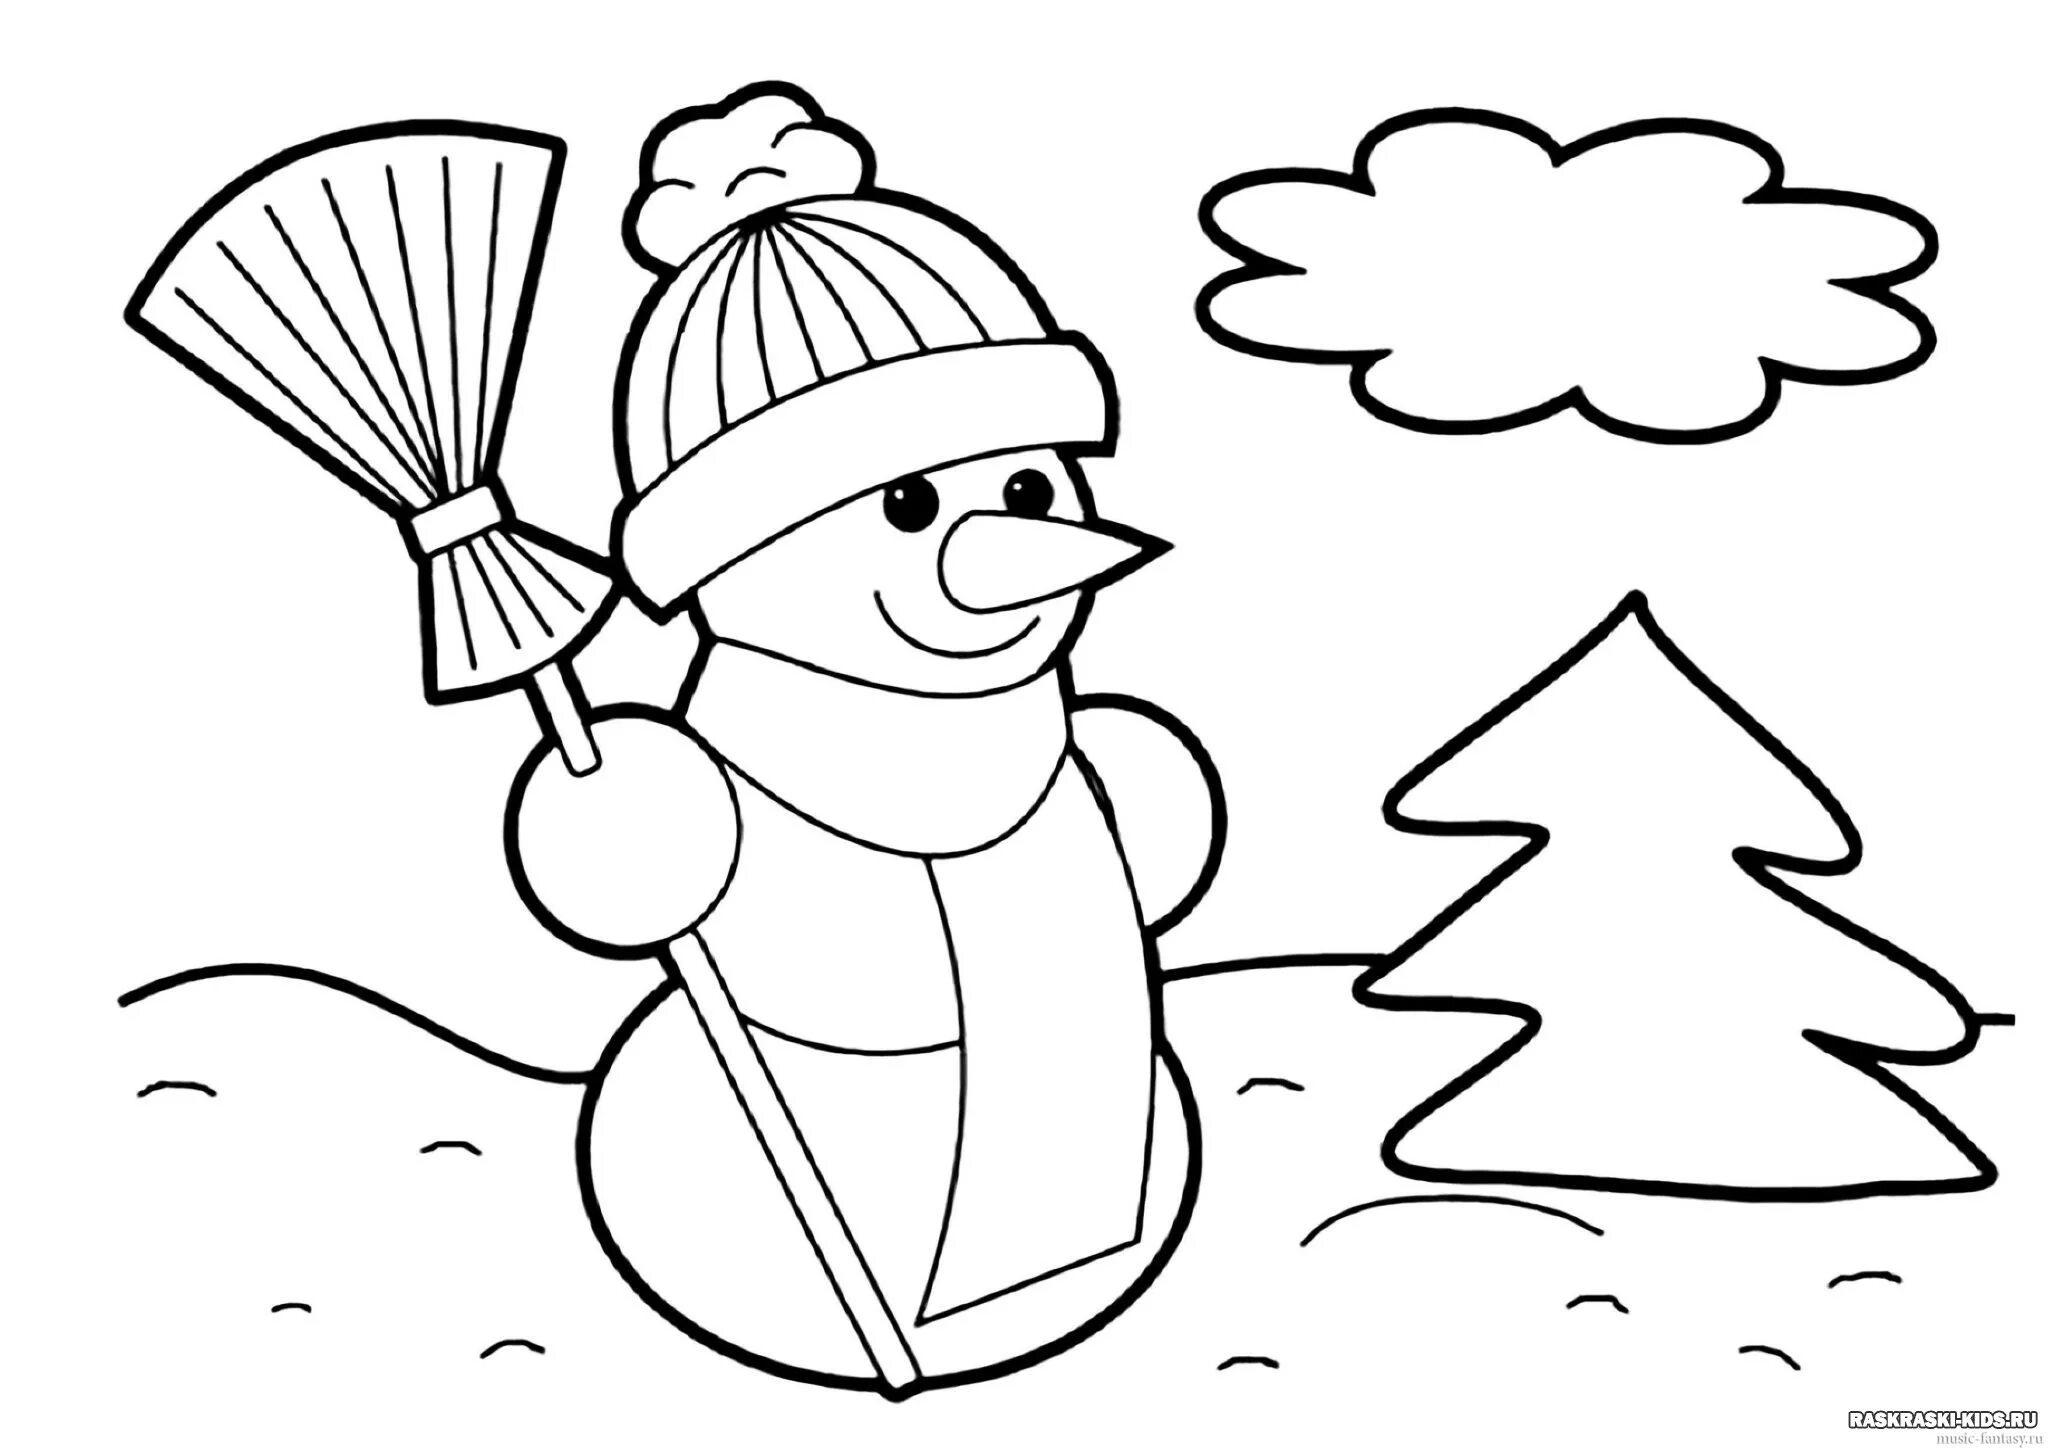 Раскраски Зима распечатать или скачать бесплатно в формате PDF.